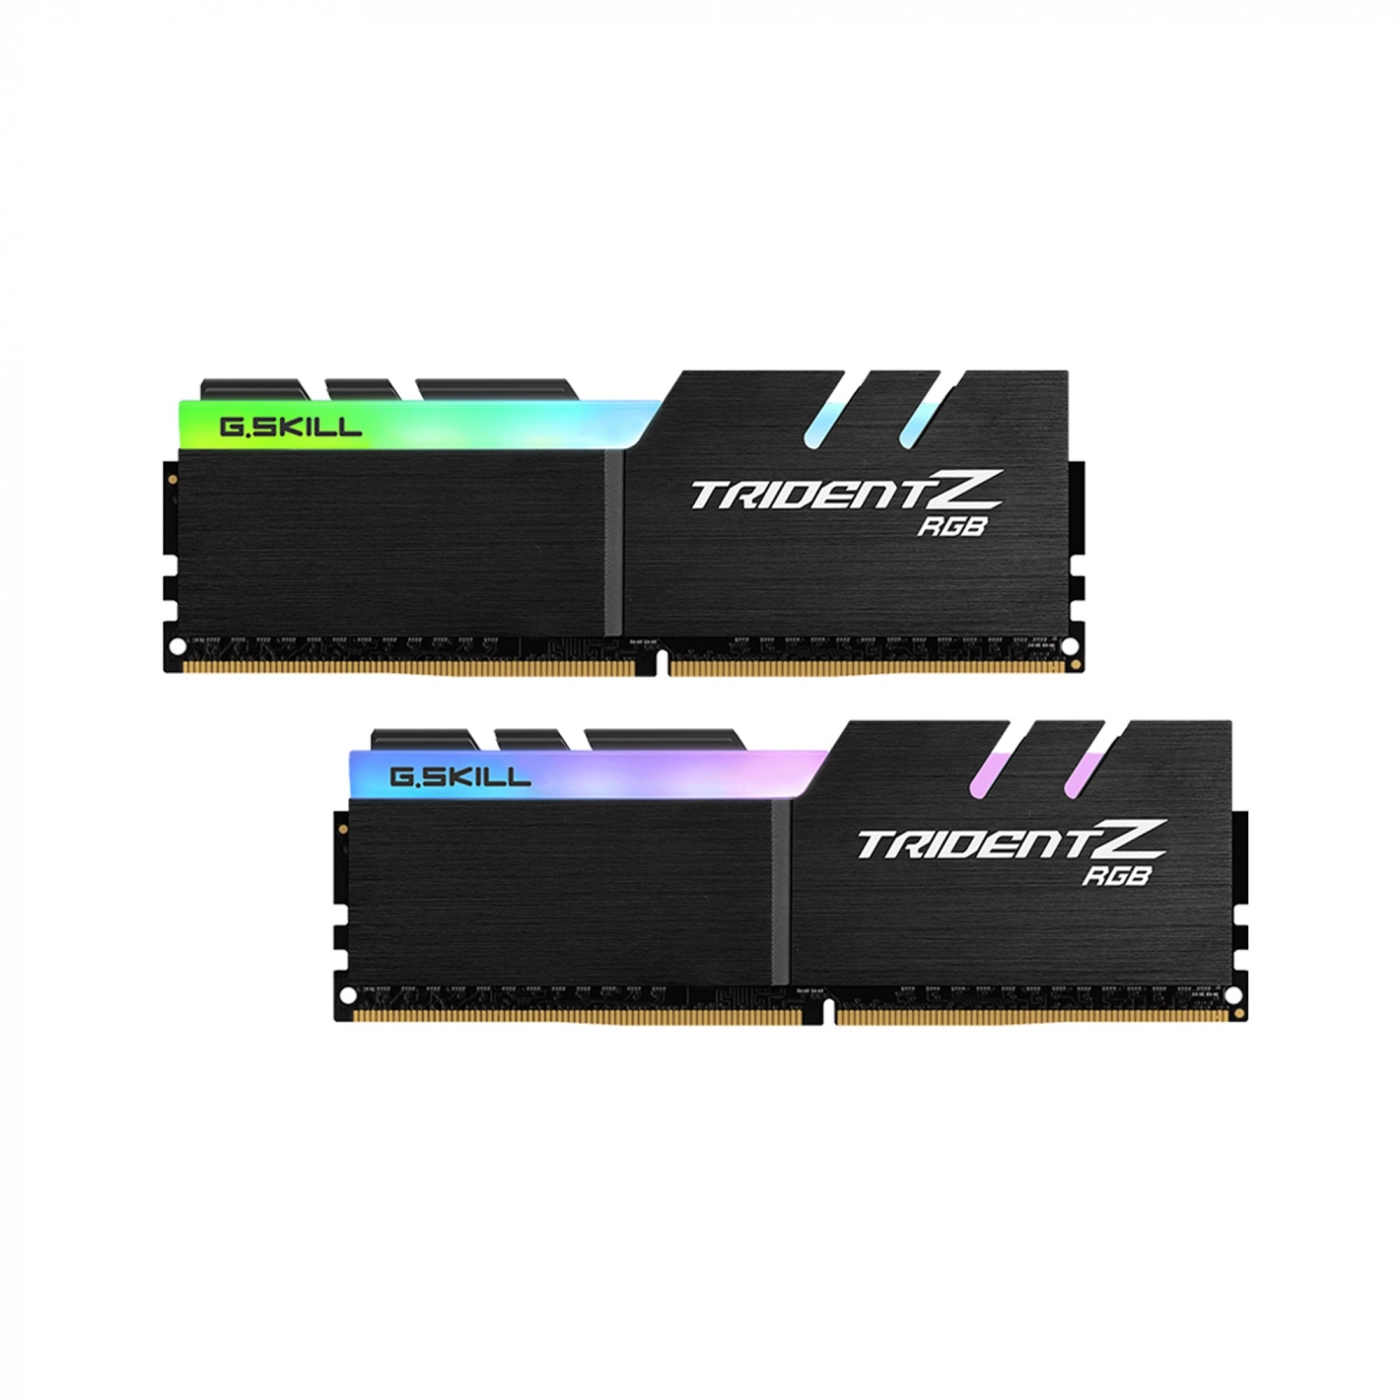 Купить Модуль памяти G.Skill Trident Z RGB DDR4-3200 CL16-18-18-38 1.35V 32GB (2x16GB) - фото 1